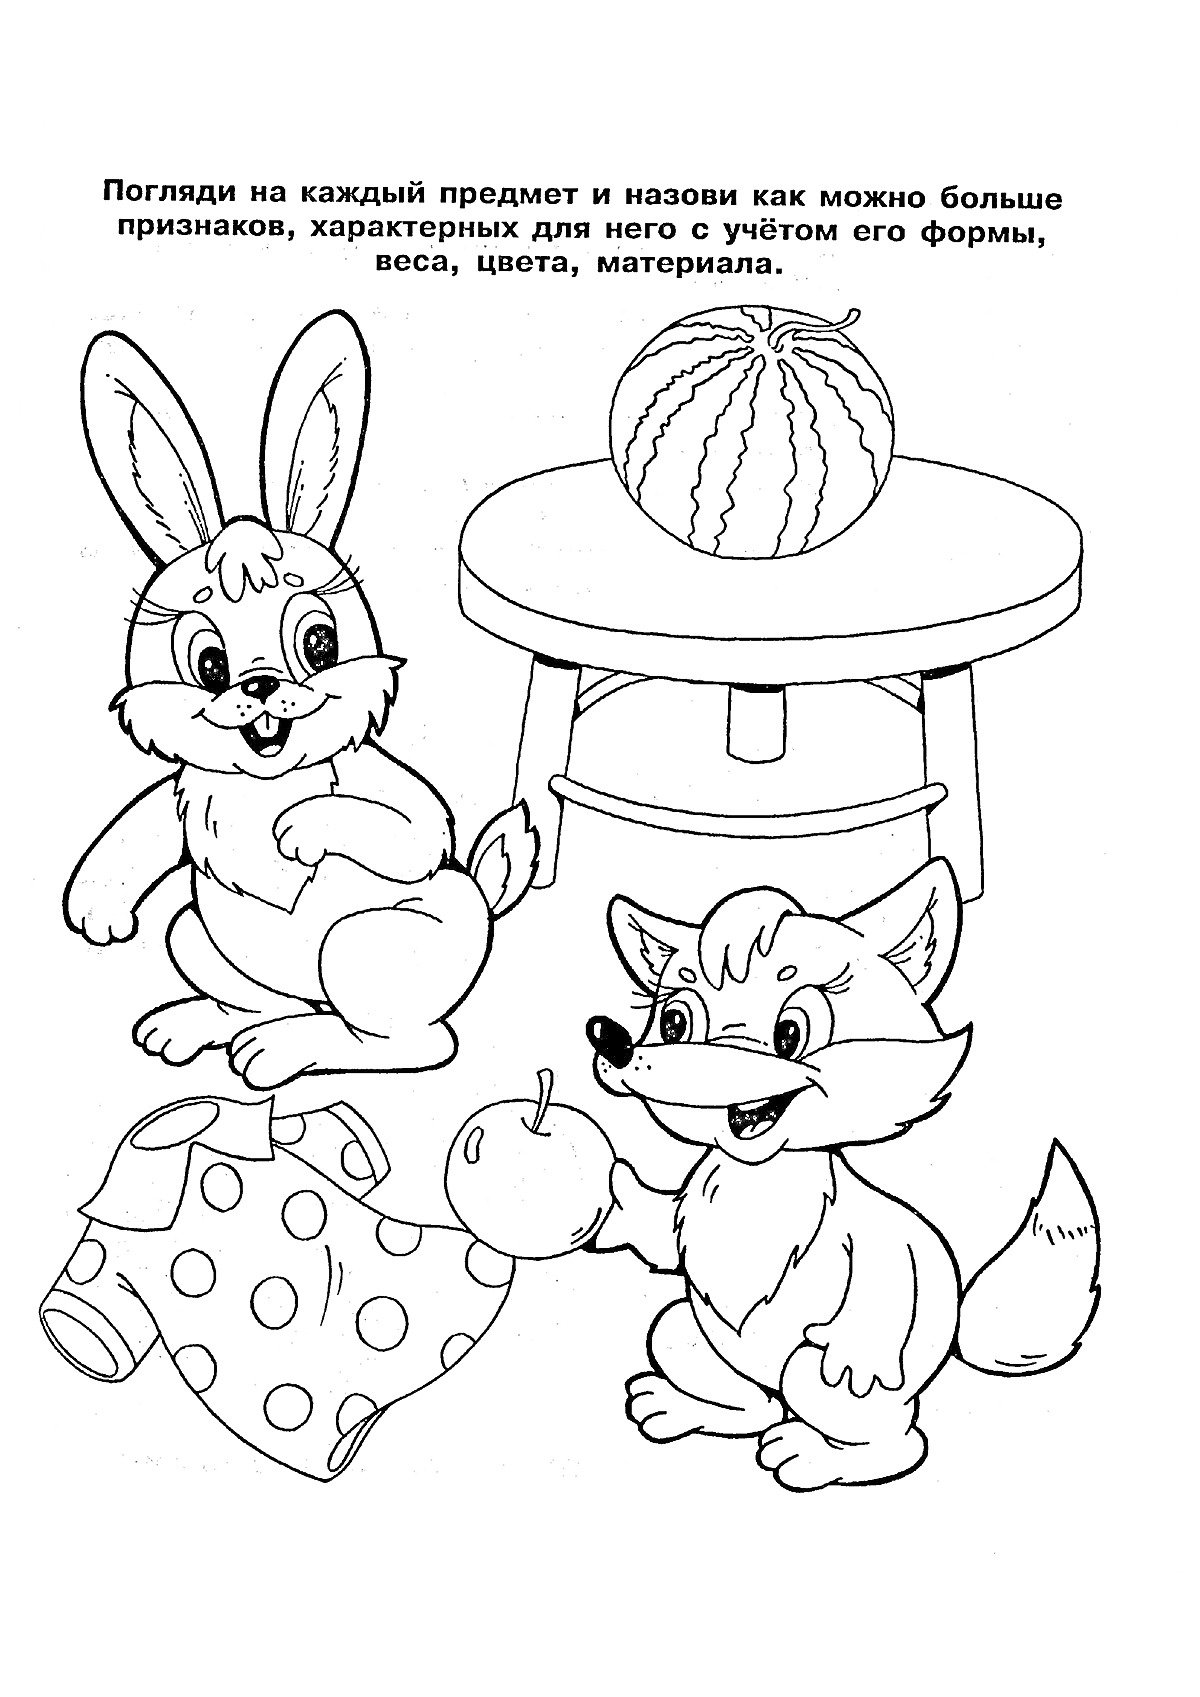 Заяц и лисица с яблоком, арбузом, табуреткой и кофточкой с горошком